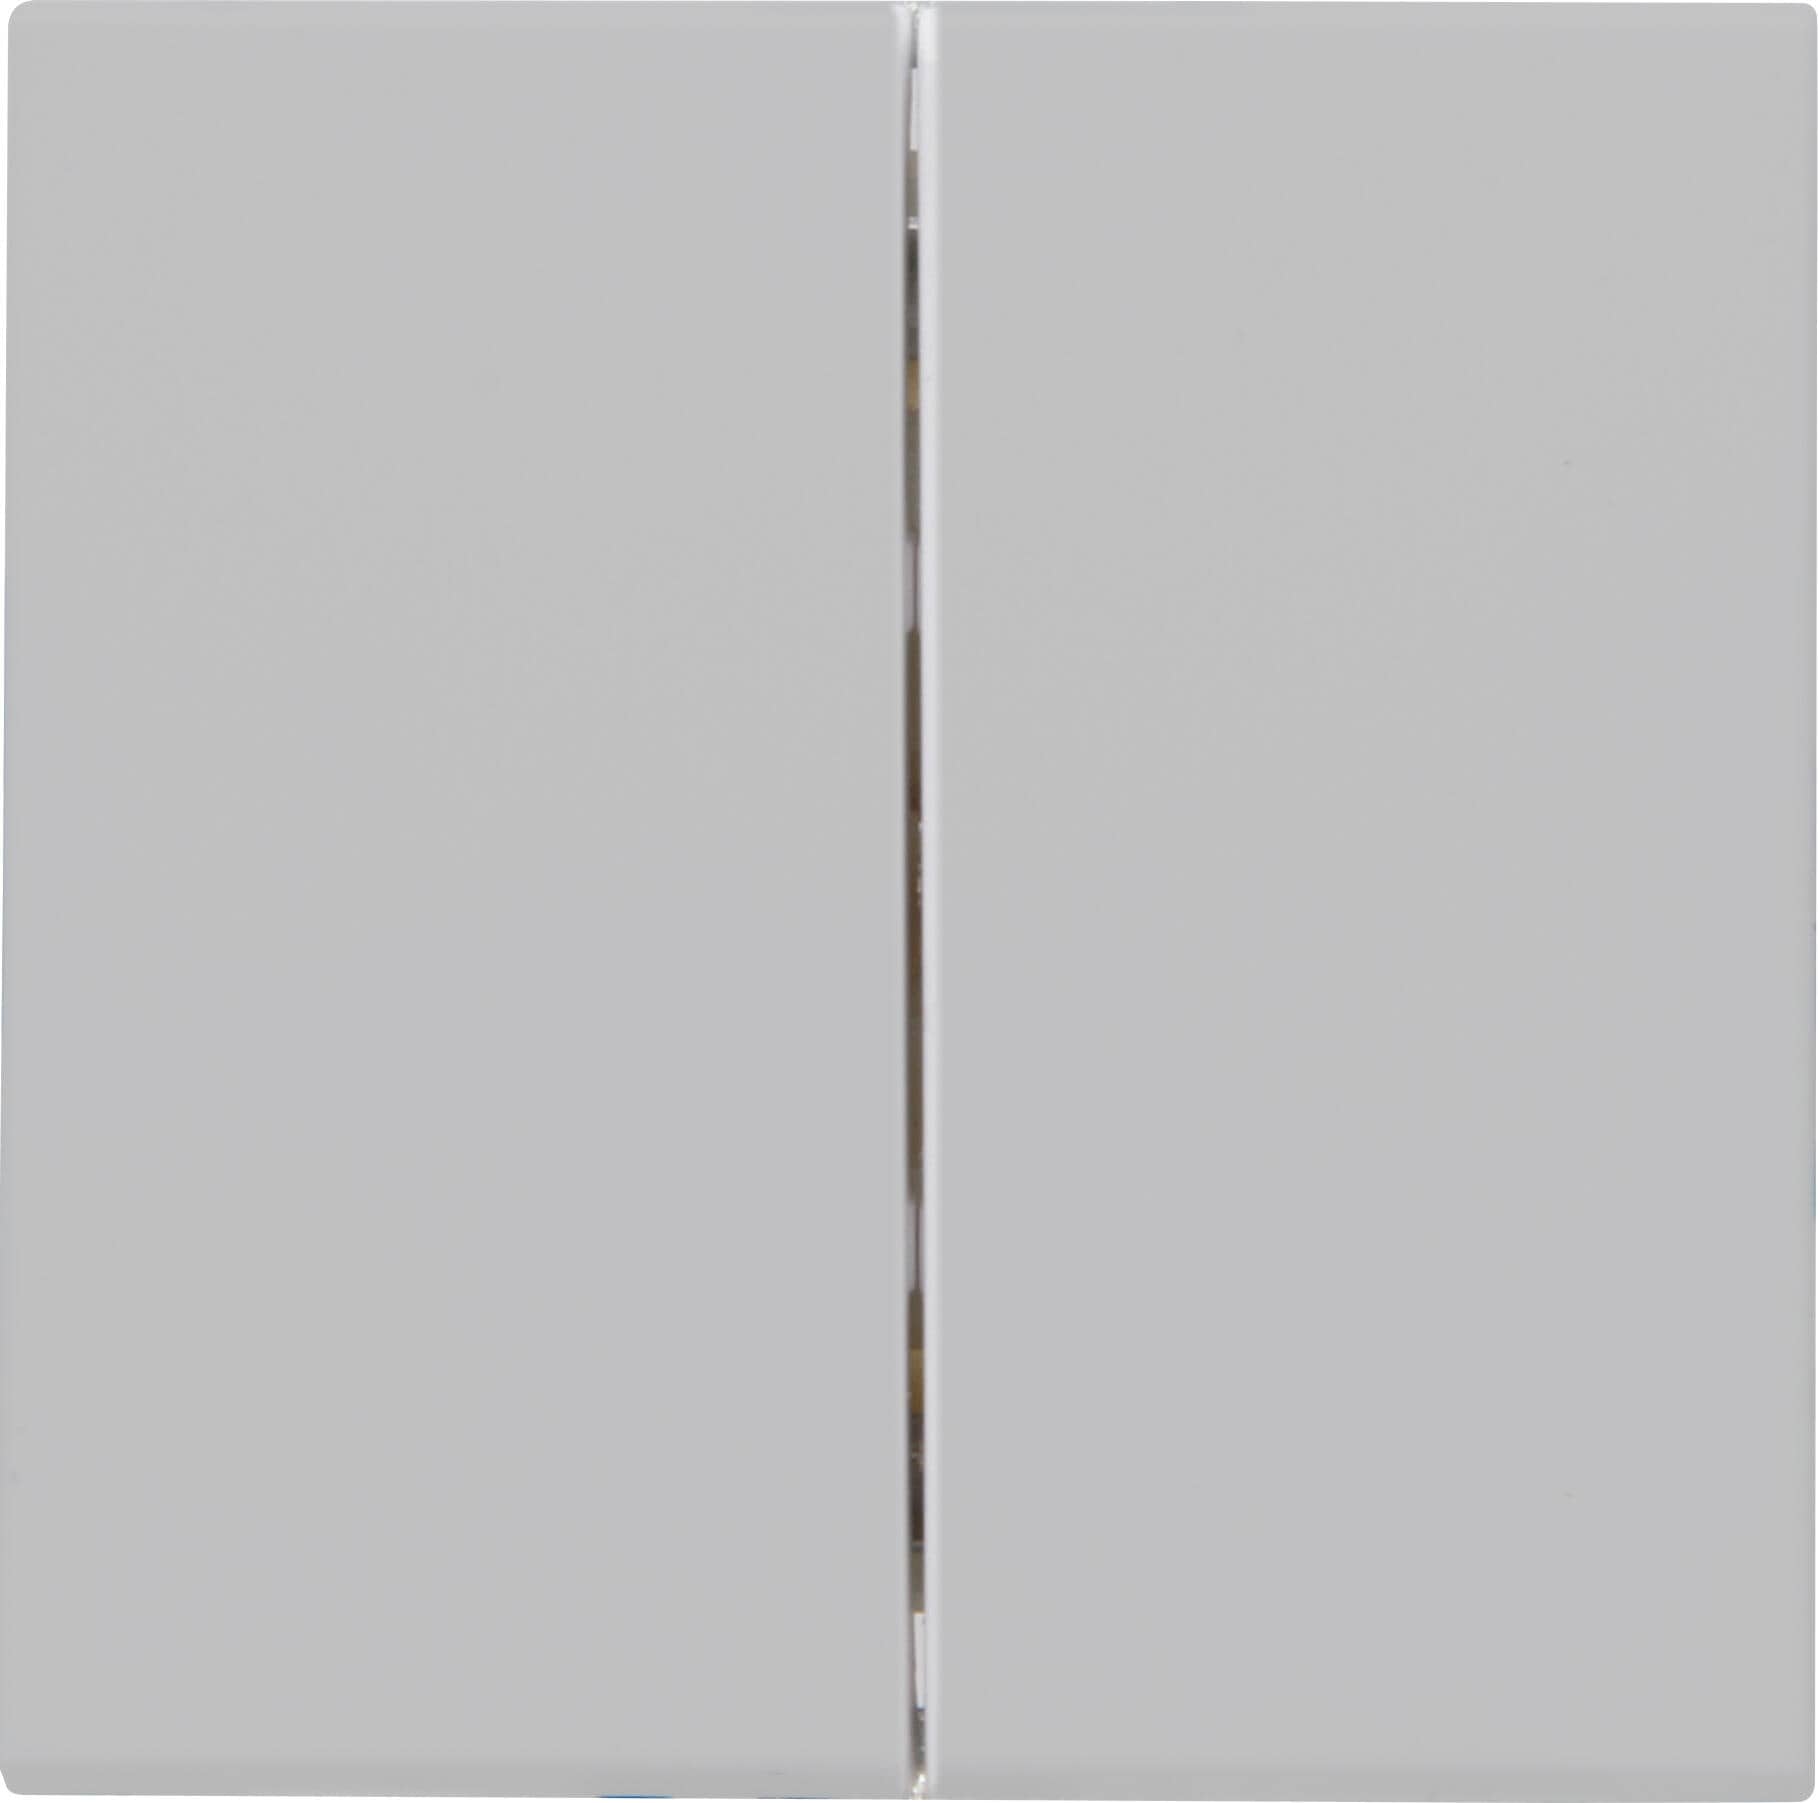 Kopp 490334009 HK07 - Flächendoppelwippe, Farbe: grau matt